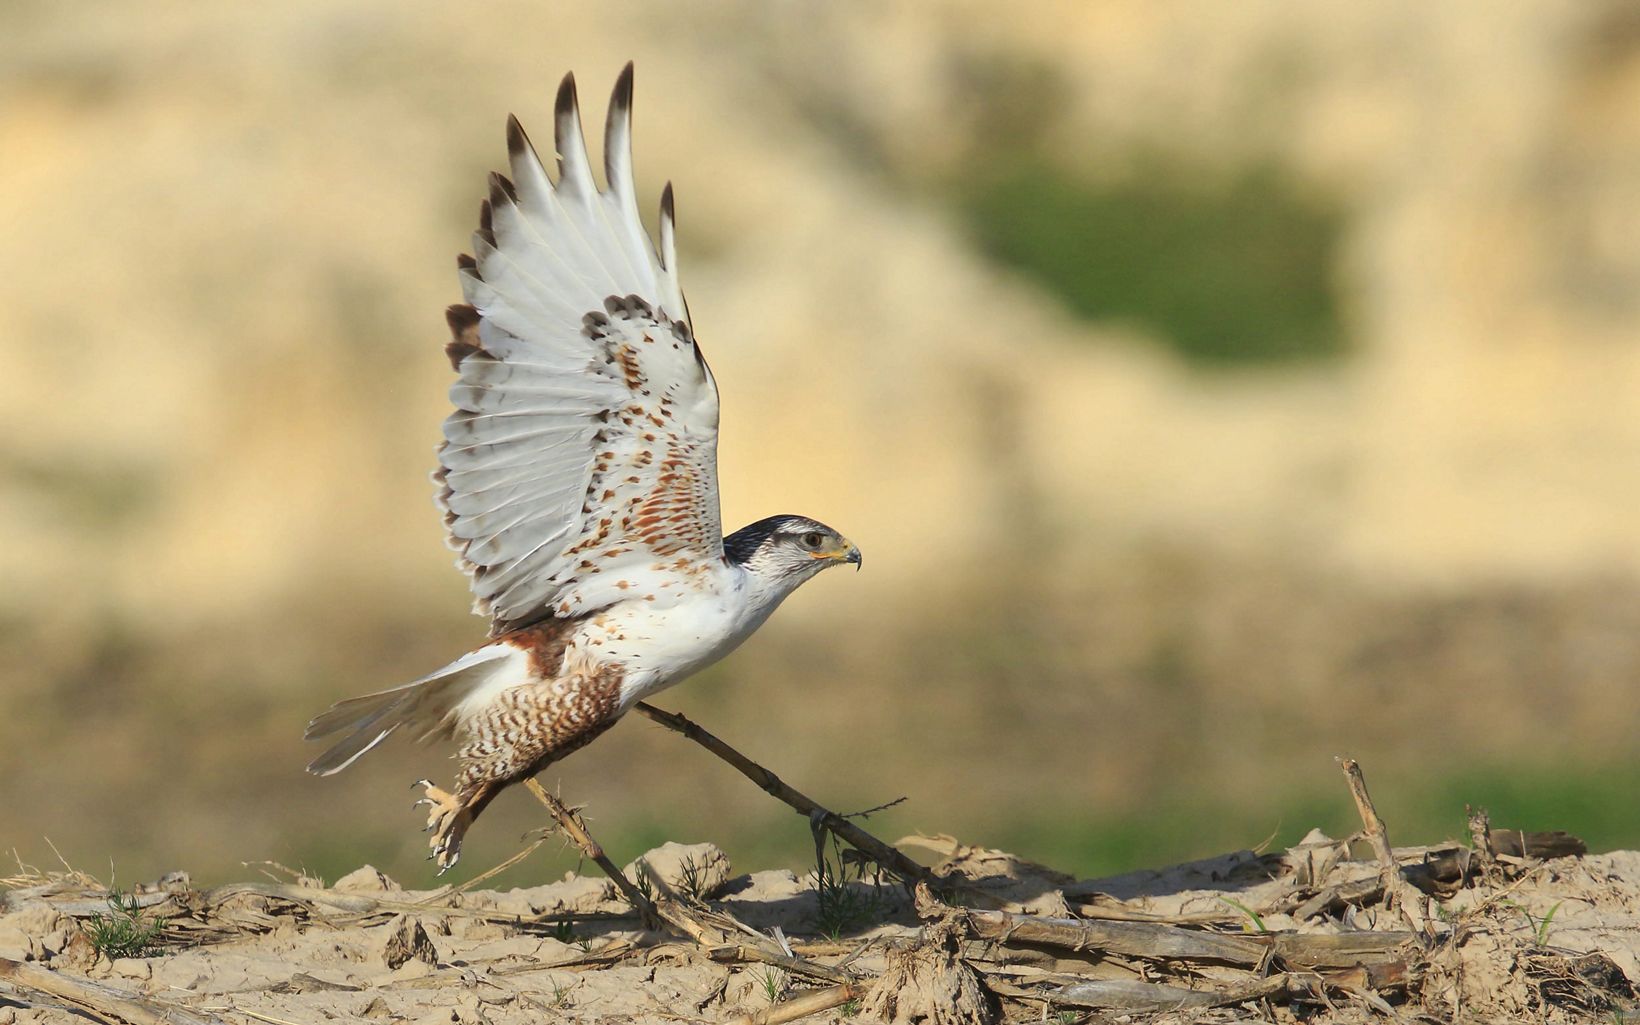 Large brown and white bird taking flight.